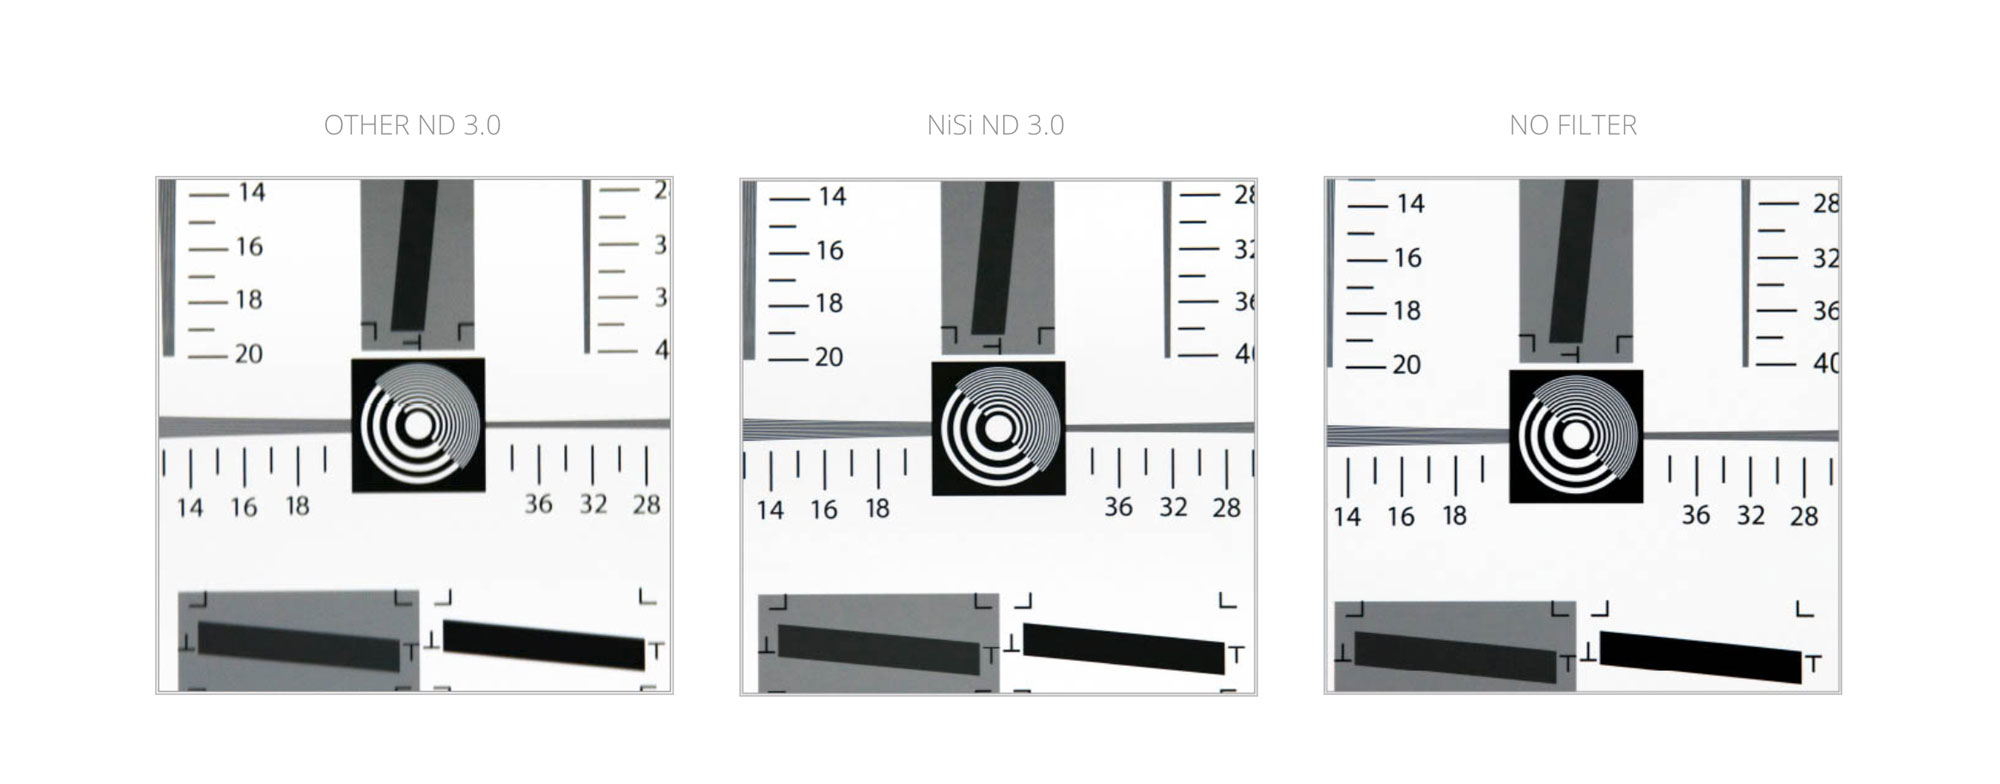 GND 100x150mm - クリエイターのためのフィルターメーカー NiSi